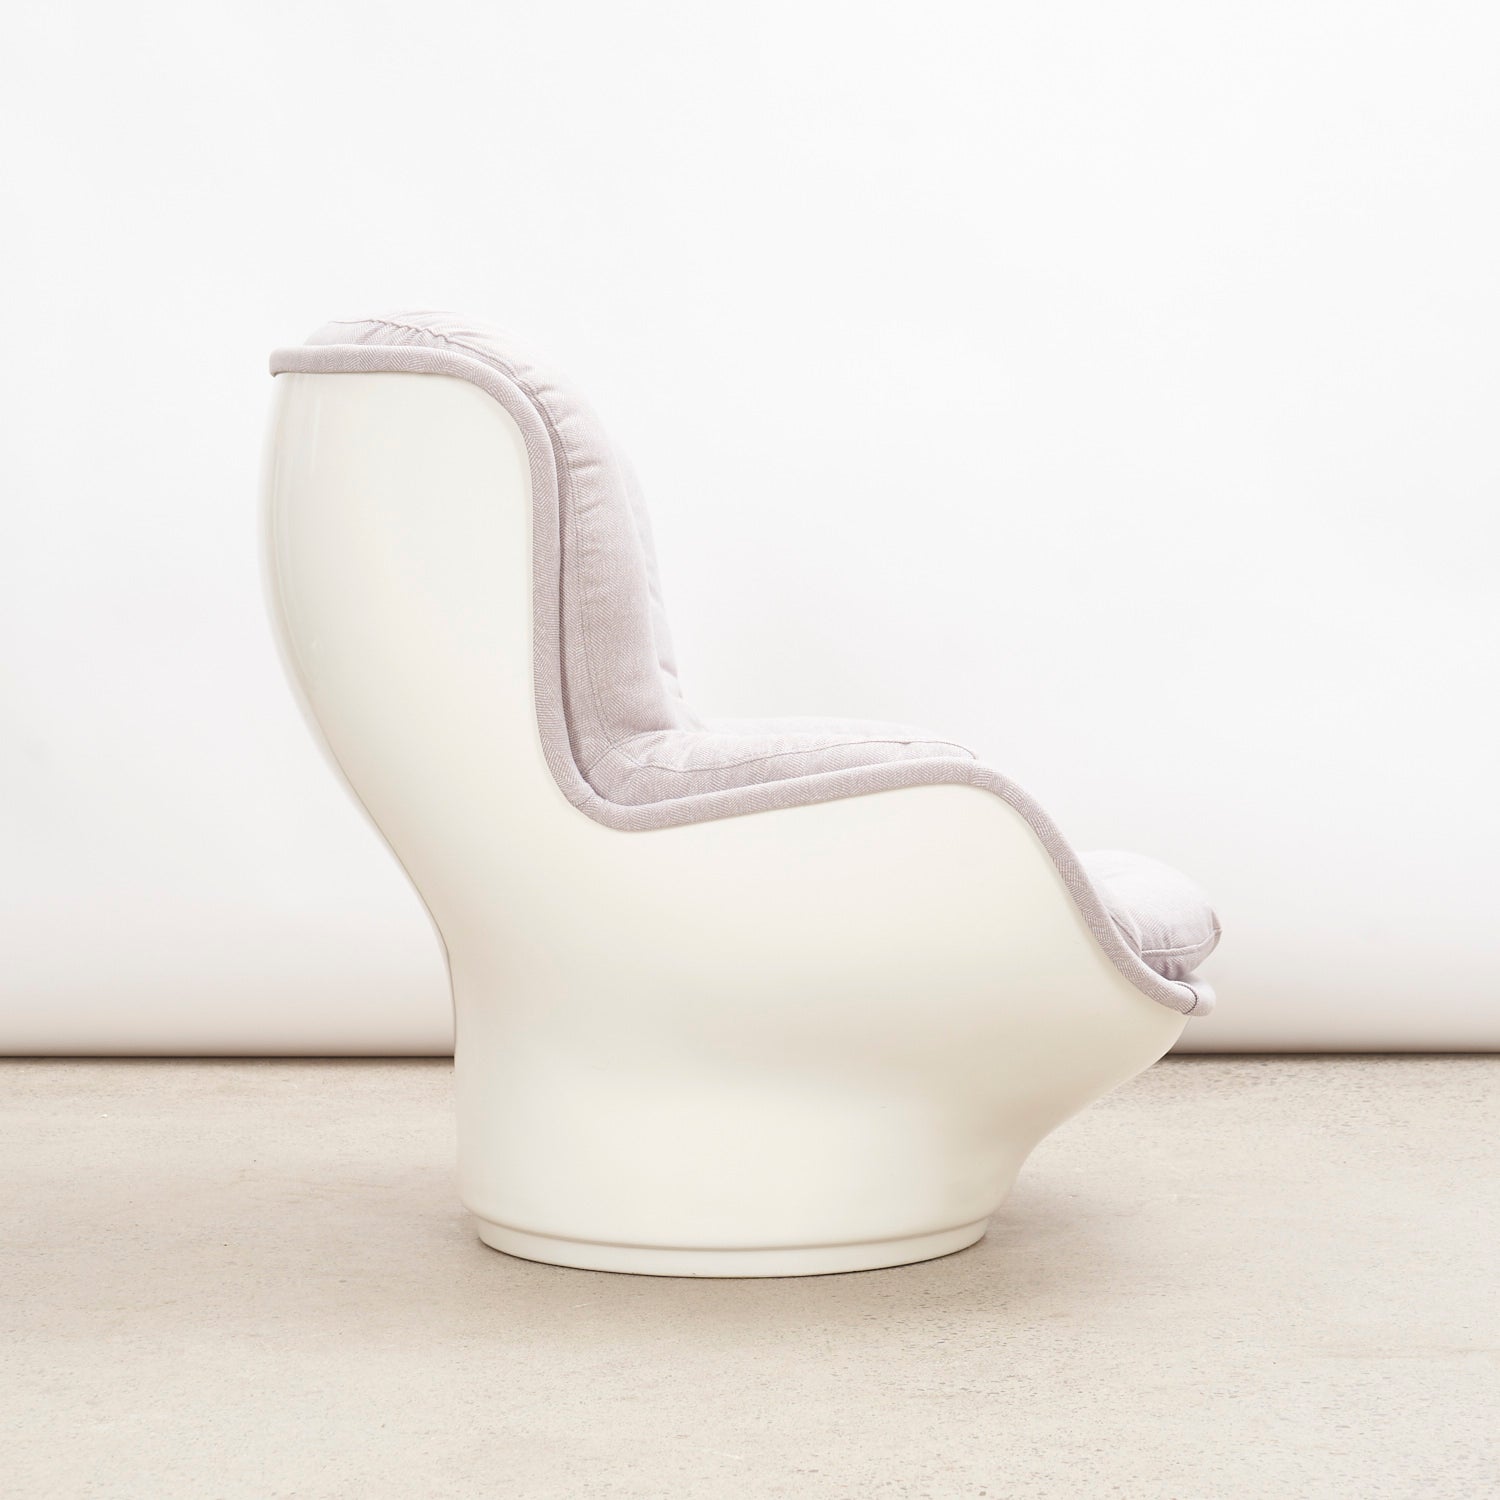 'Karate' Chair by Michel Cadestin